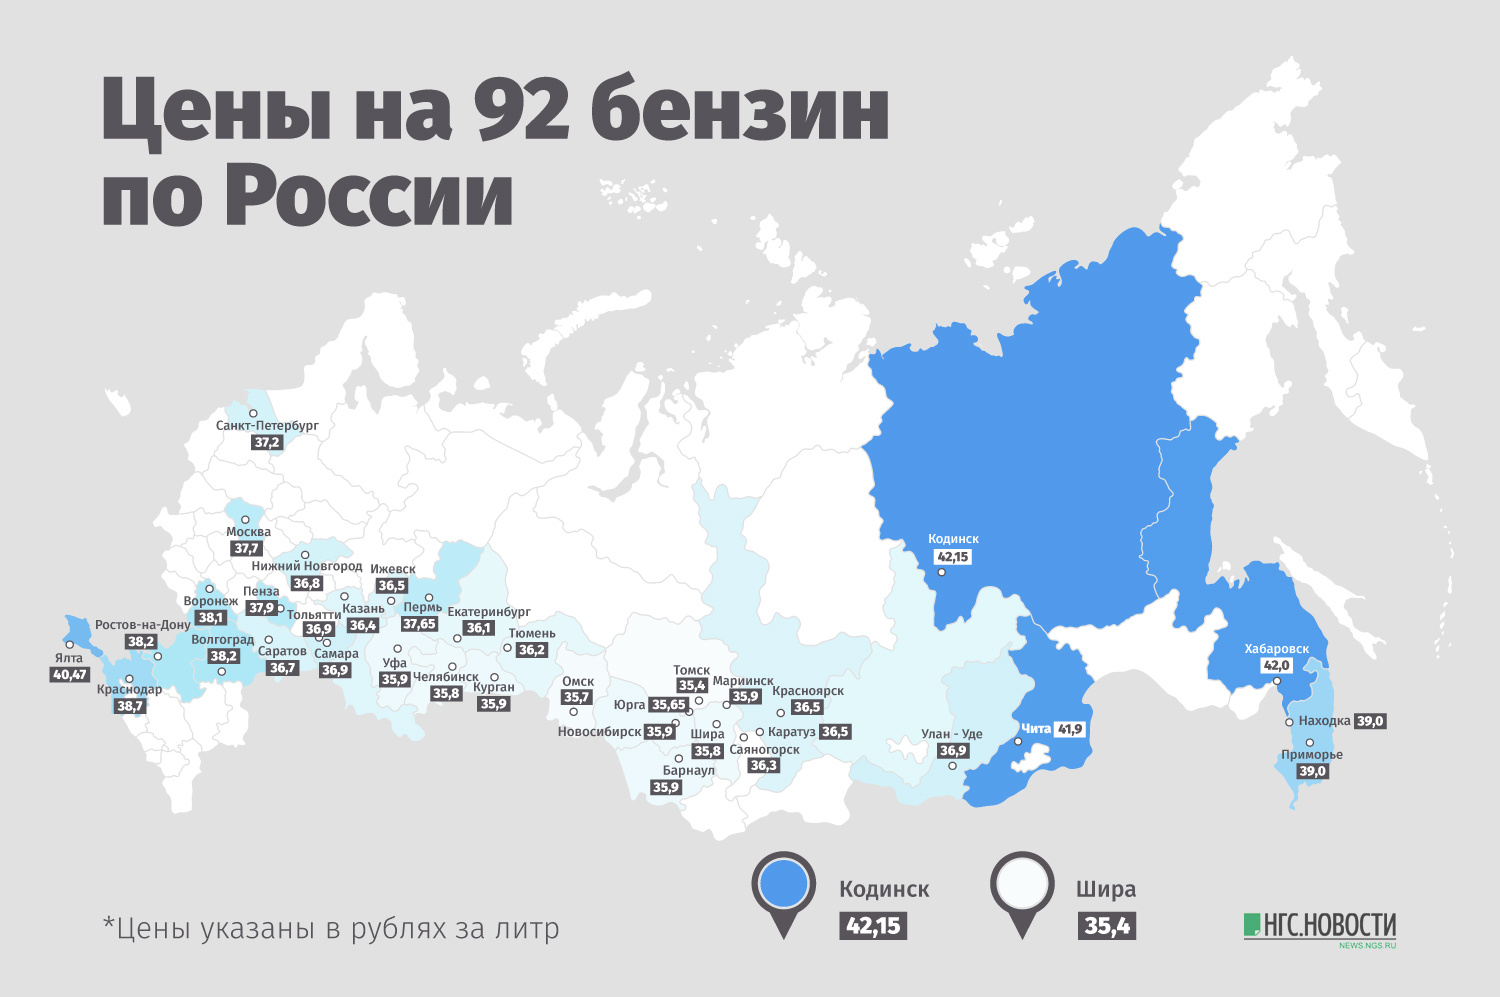 В красноярске сколько будет час. Карта Росси по стоимости бензина. Карта цены топлива в России. Карта России с ценами на бензин по регионам. Карта цен на топливо в мире.